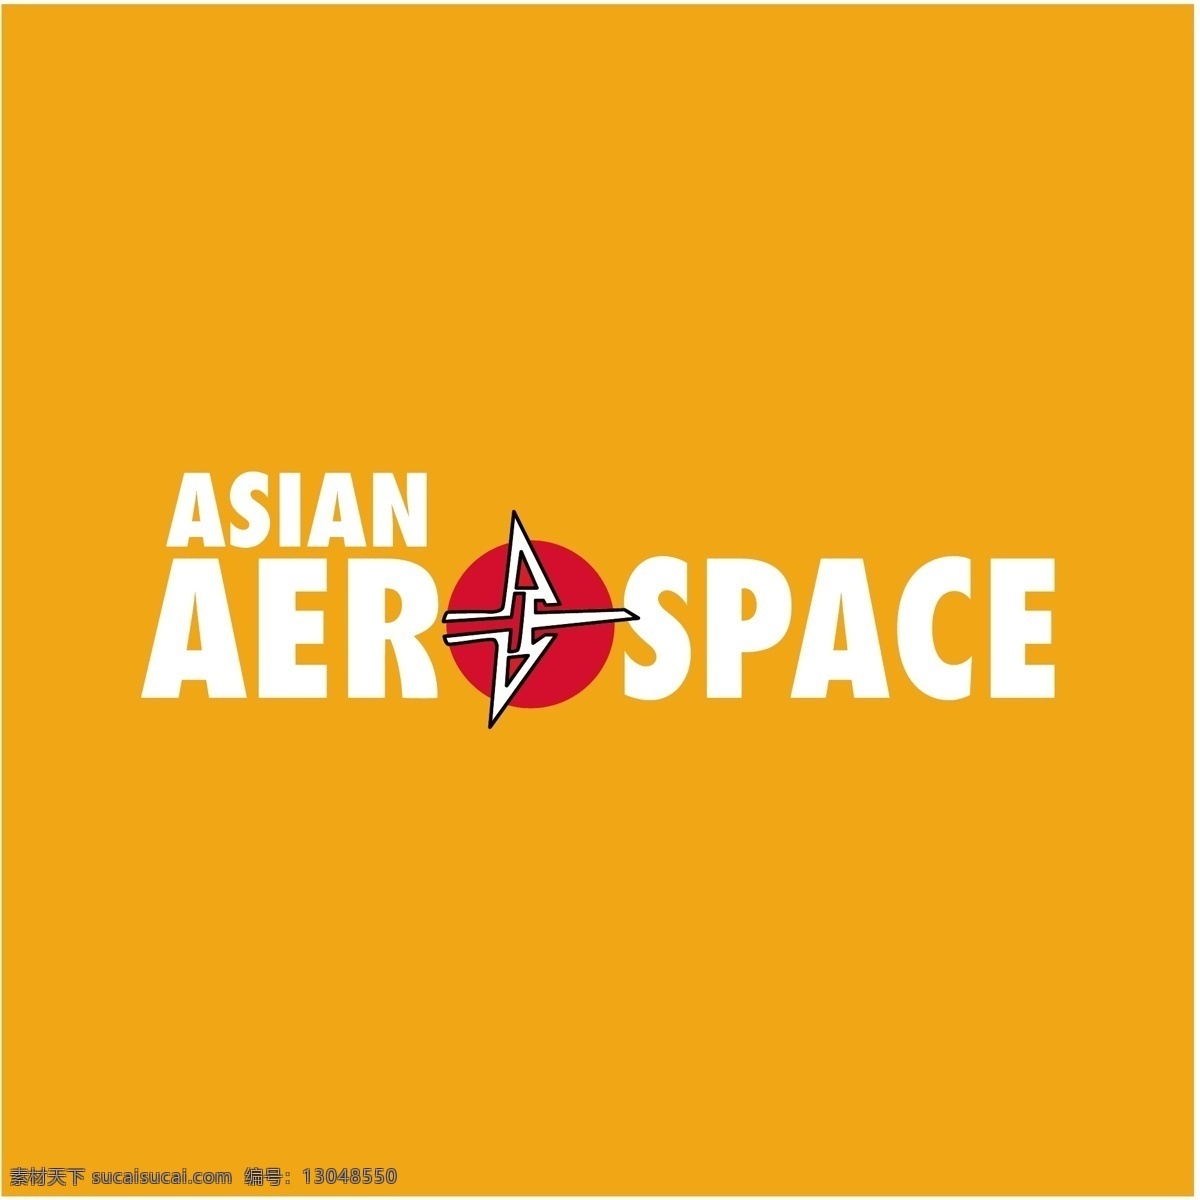 航天 亚洲 亚洲航空 矢量 图形 艺术 载体 免费 亚洲自由下载 亚洲无载体 亚洲向量 向量 亚洲艺术 矢量亚洲设计 亚洲设计 矢量亚洲 建筑家居